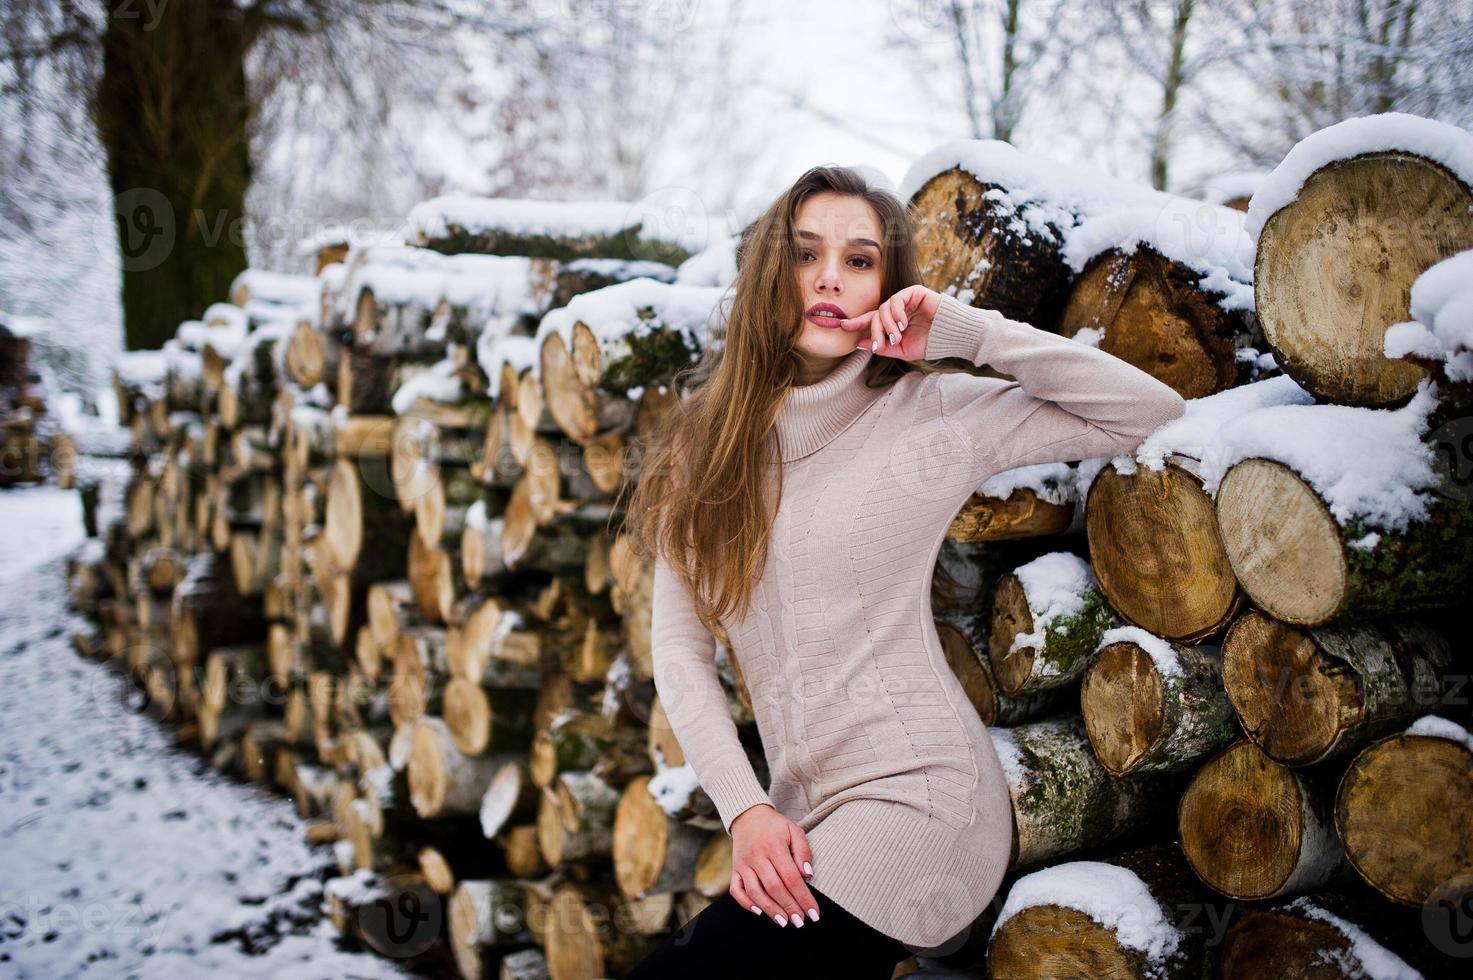 vacker brunett flicka i vinter varma kläder. modell på vintertröja nära stubben. foto